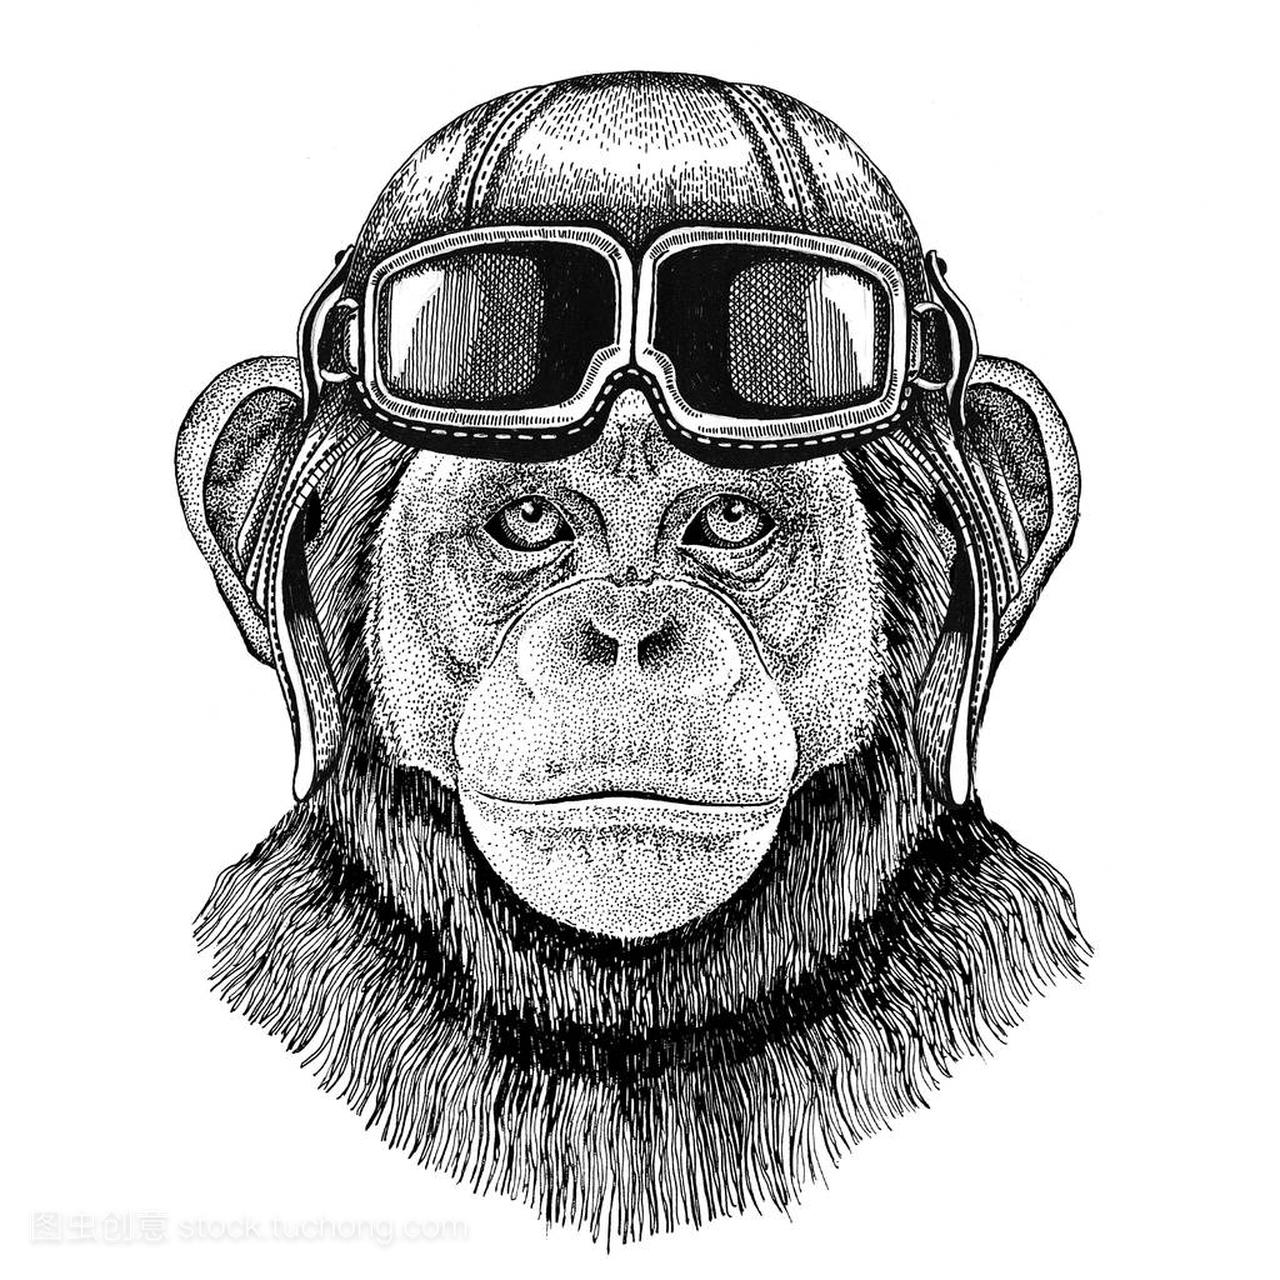 黑猩猩猴子飞行员,骑自行车、 摩托车手绘制的